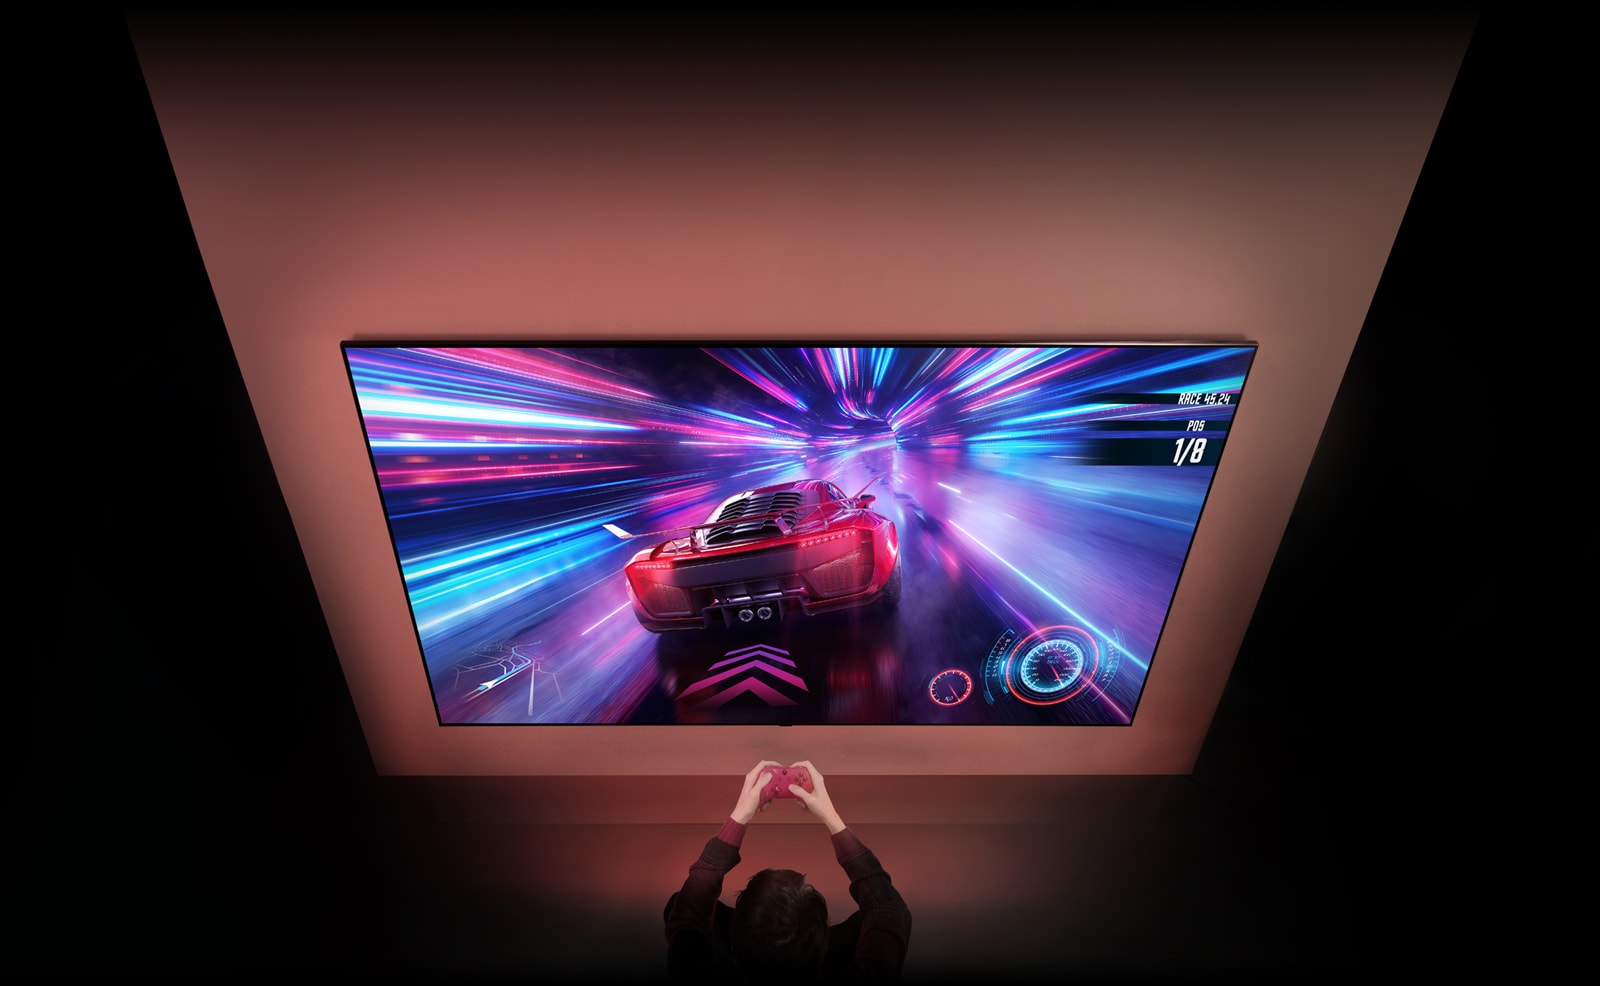 על קיר תלויה טלוויזיה בעלת מסך גדול וניתן לראות משחק מרוצים במסך. מול הטלוויזיה, ניתן לראות ידיים אוחזות בבקרי המשחק במהלך המשחק.